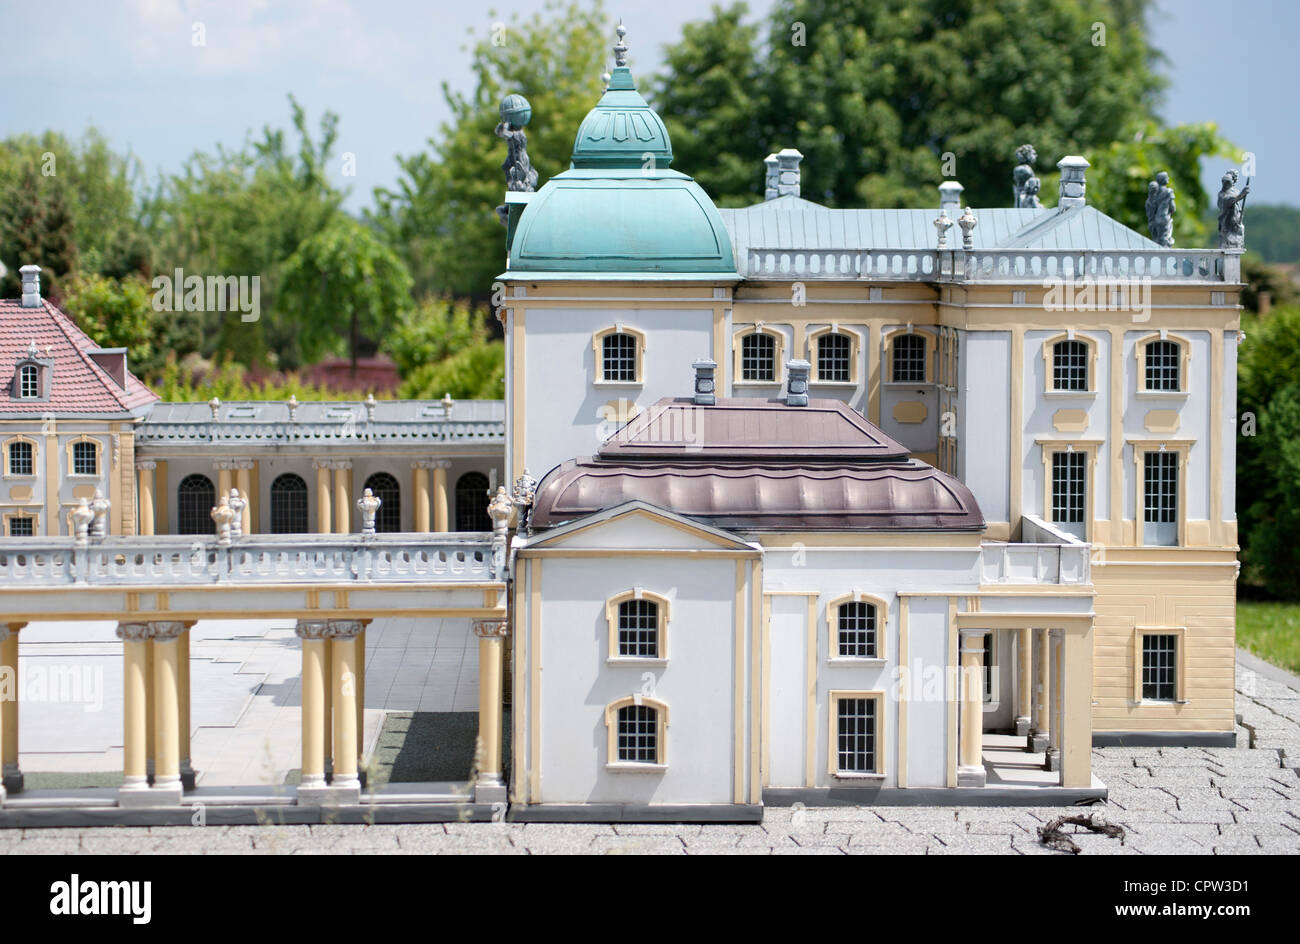 Le Palac Branickich avec miniature Bialystok dans parc miniature d'Inwald en Pologne. Monde miniature a été construite à l'échelle de 1:25 Banque D'Images